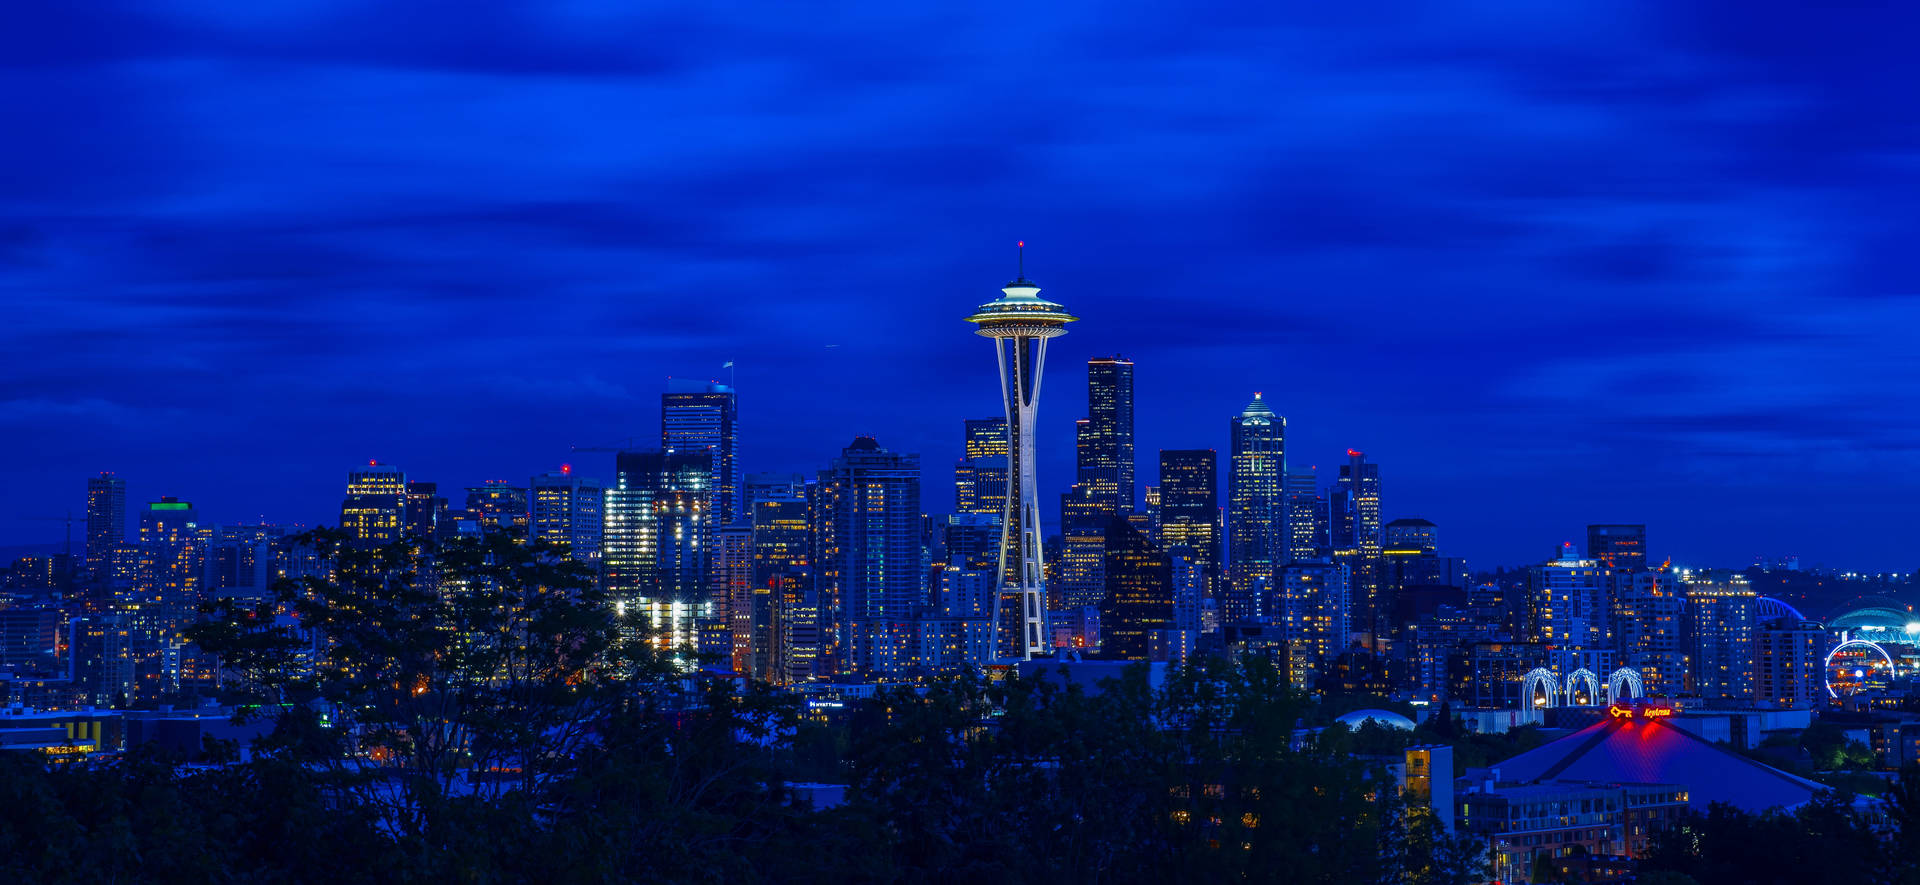 Washington Seattle City Night Background